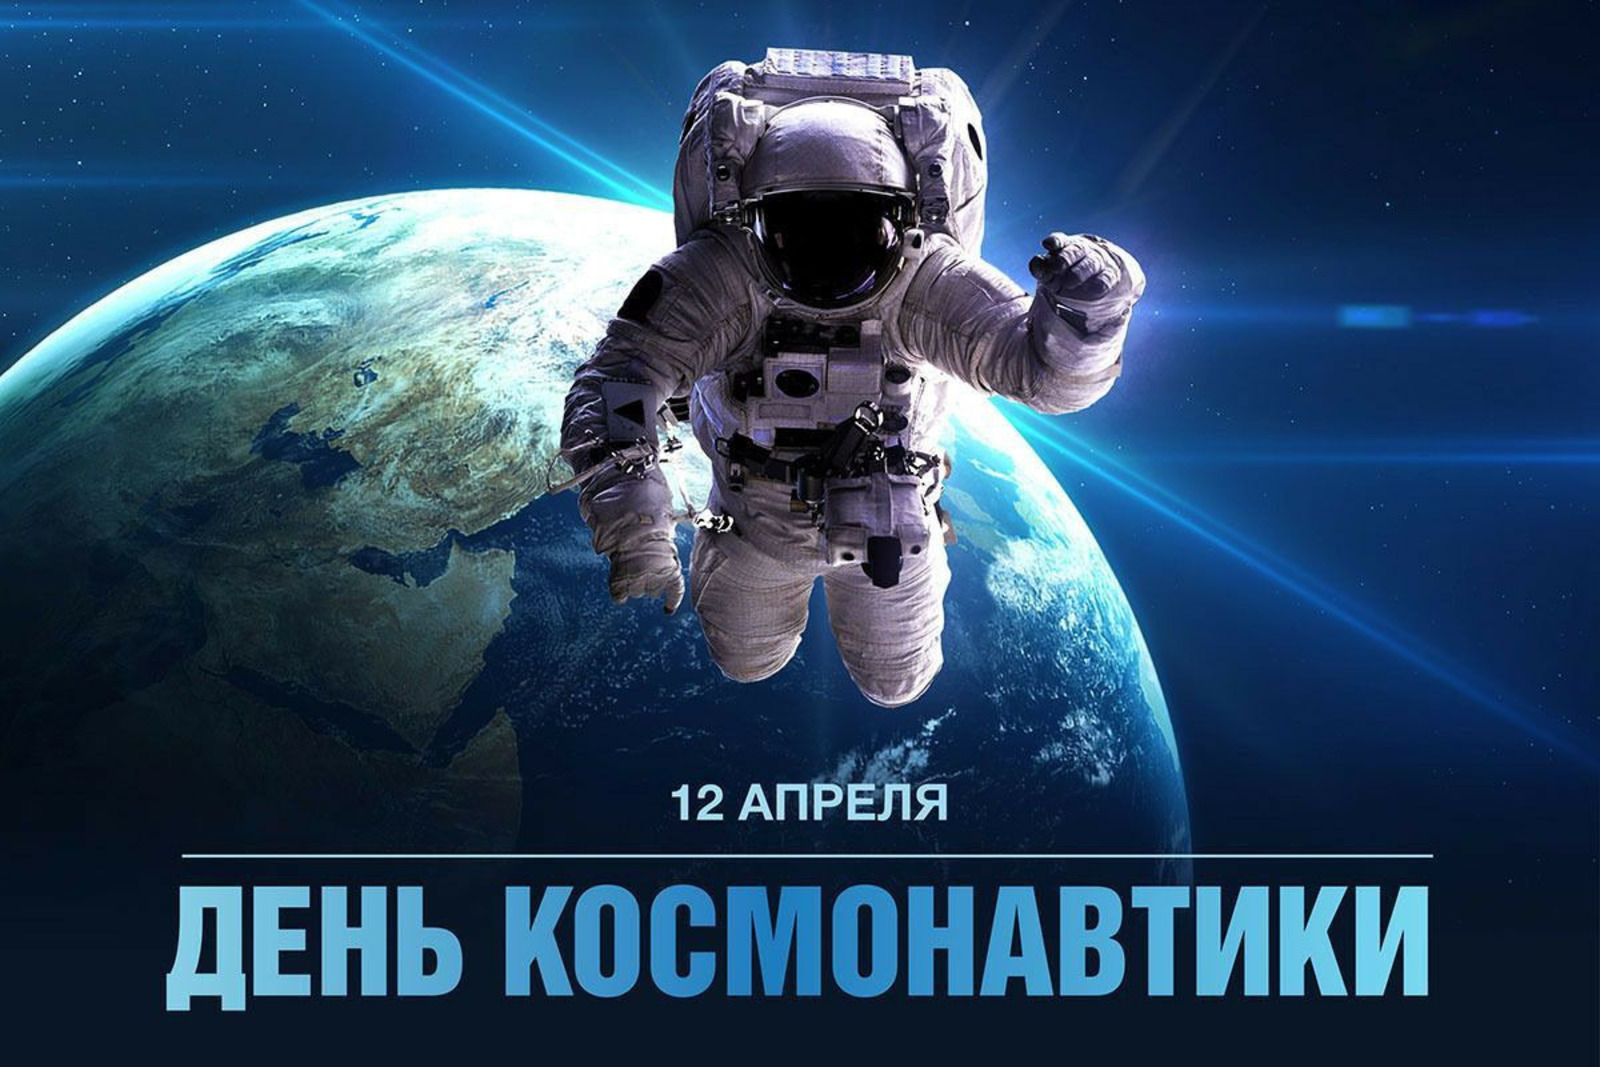 "ПРИТЯЖЕНИЕ КОСМОСА", - мероприятия ИжАСТРО ко Дню космонавтики!